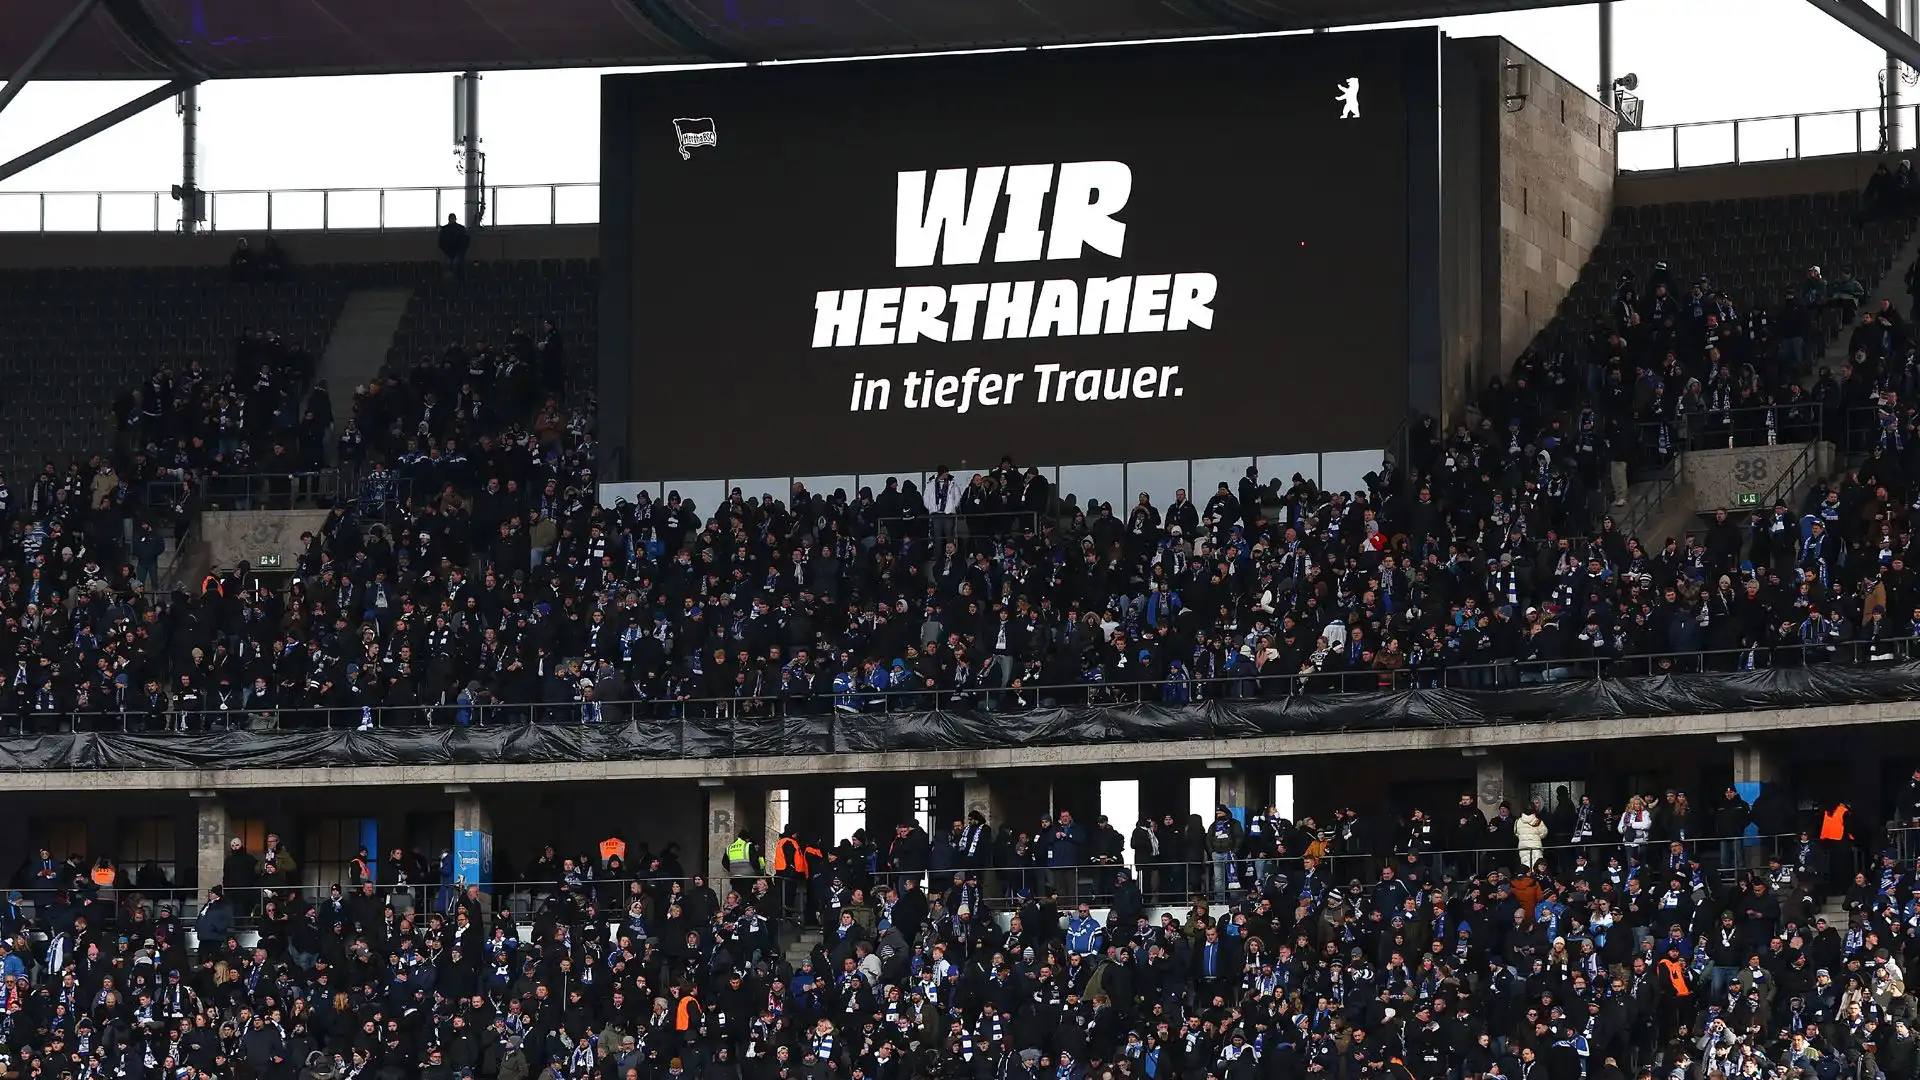 I giocatori dell'Hertha avrebbero voluto dedicargli la vittoria con il Fortuna Dusseldorf